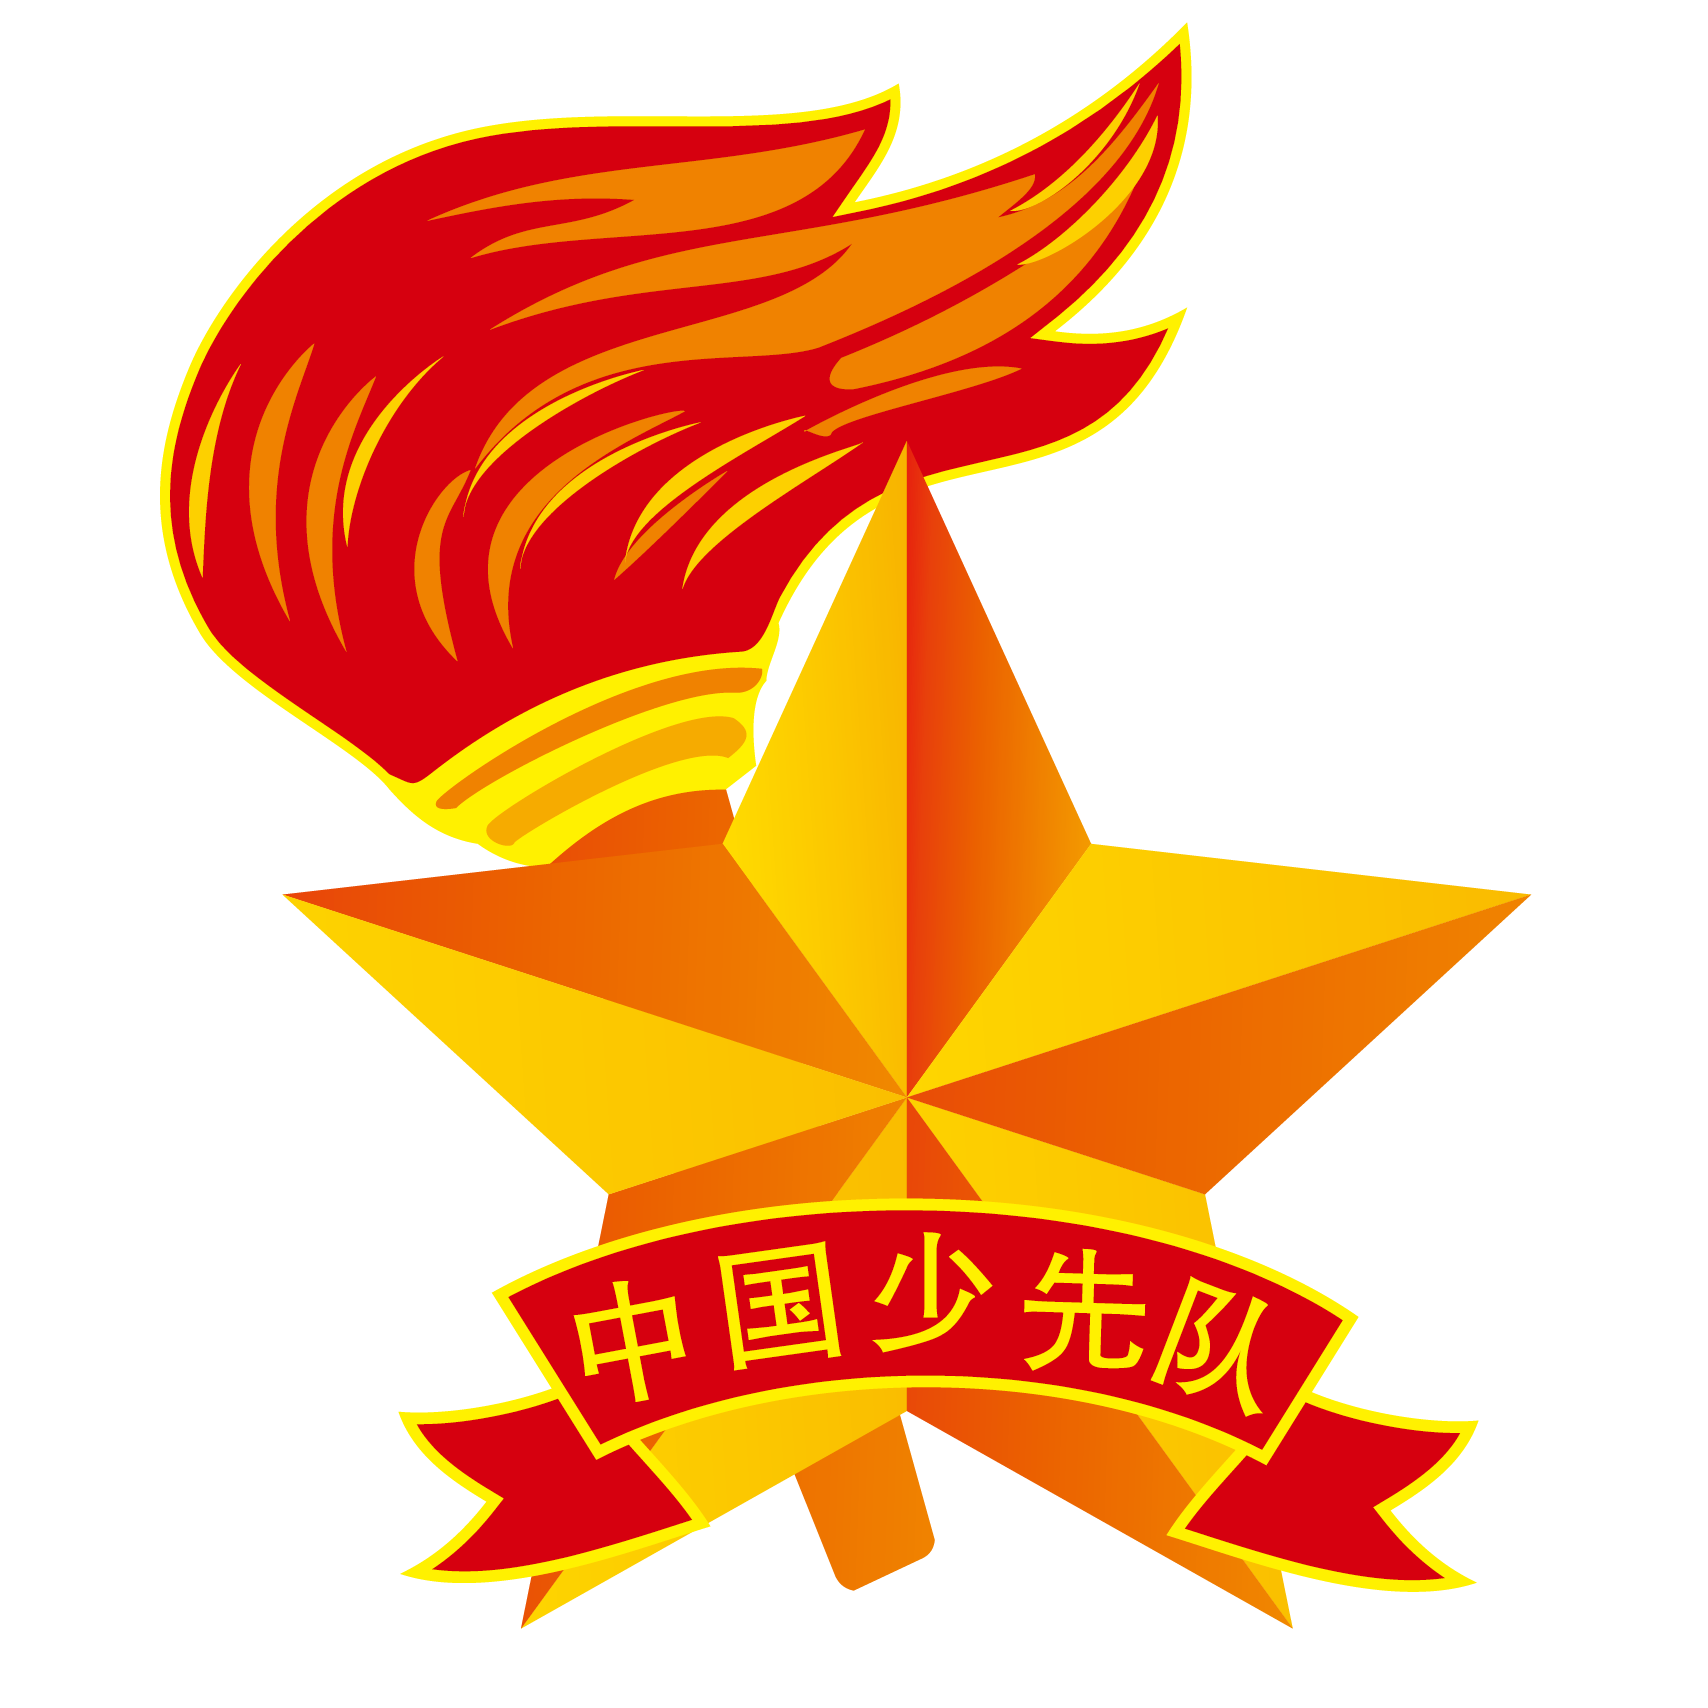 00 地点:陈经纶中学民族分校阶梯教室  庆祝中国少年先锋队建队69周年